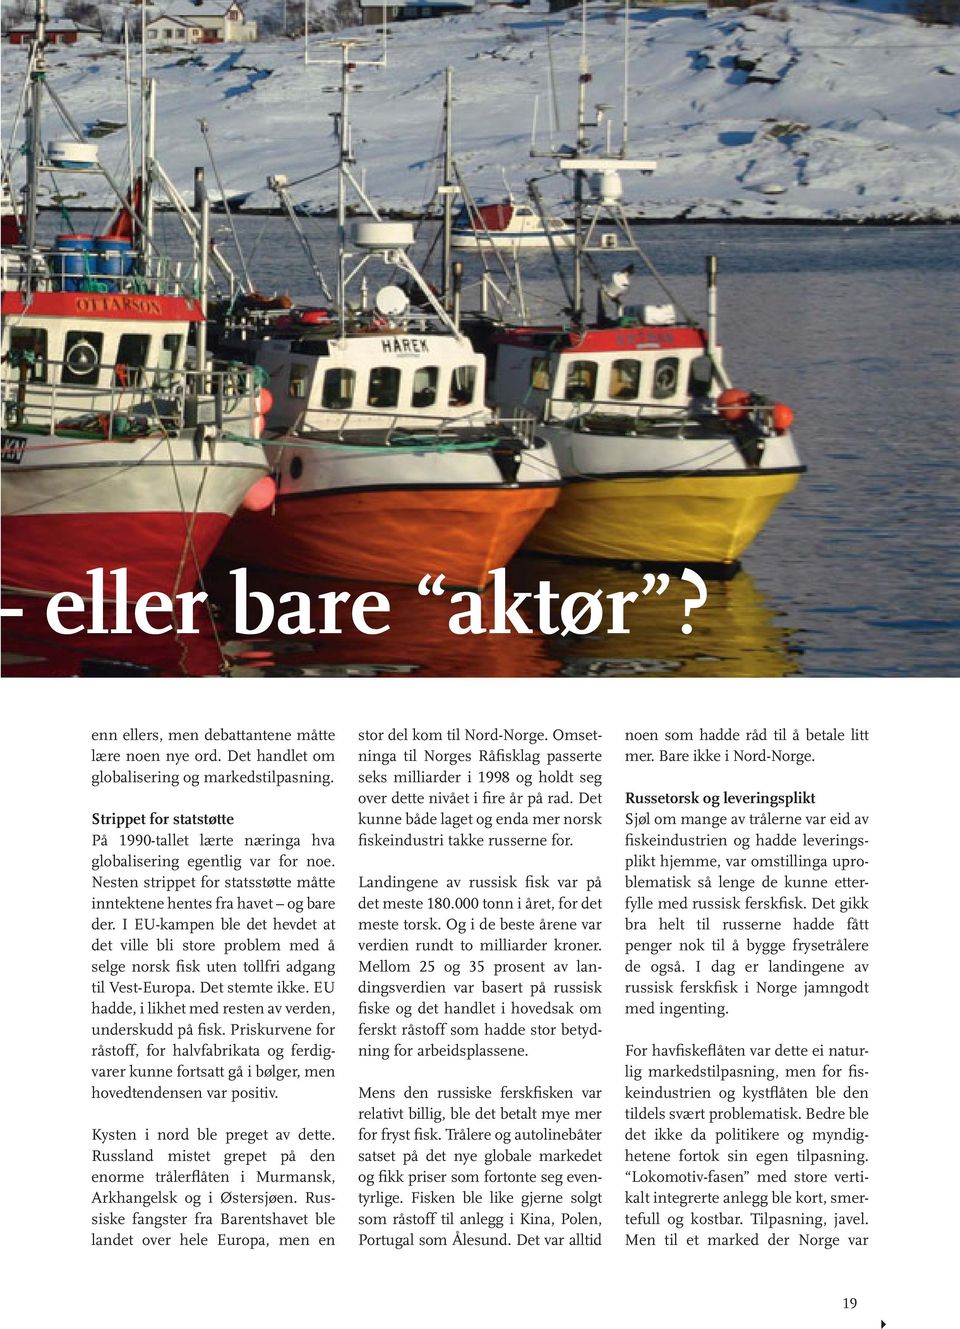 I EU-kampen ble det hevdet at det ville bli store problem med å selge norsk fisk uten tollfri adgang til Vest-Europa. Det stemte ikke. EU hadde, i likhet med resten av verden, underskudd på fisk.